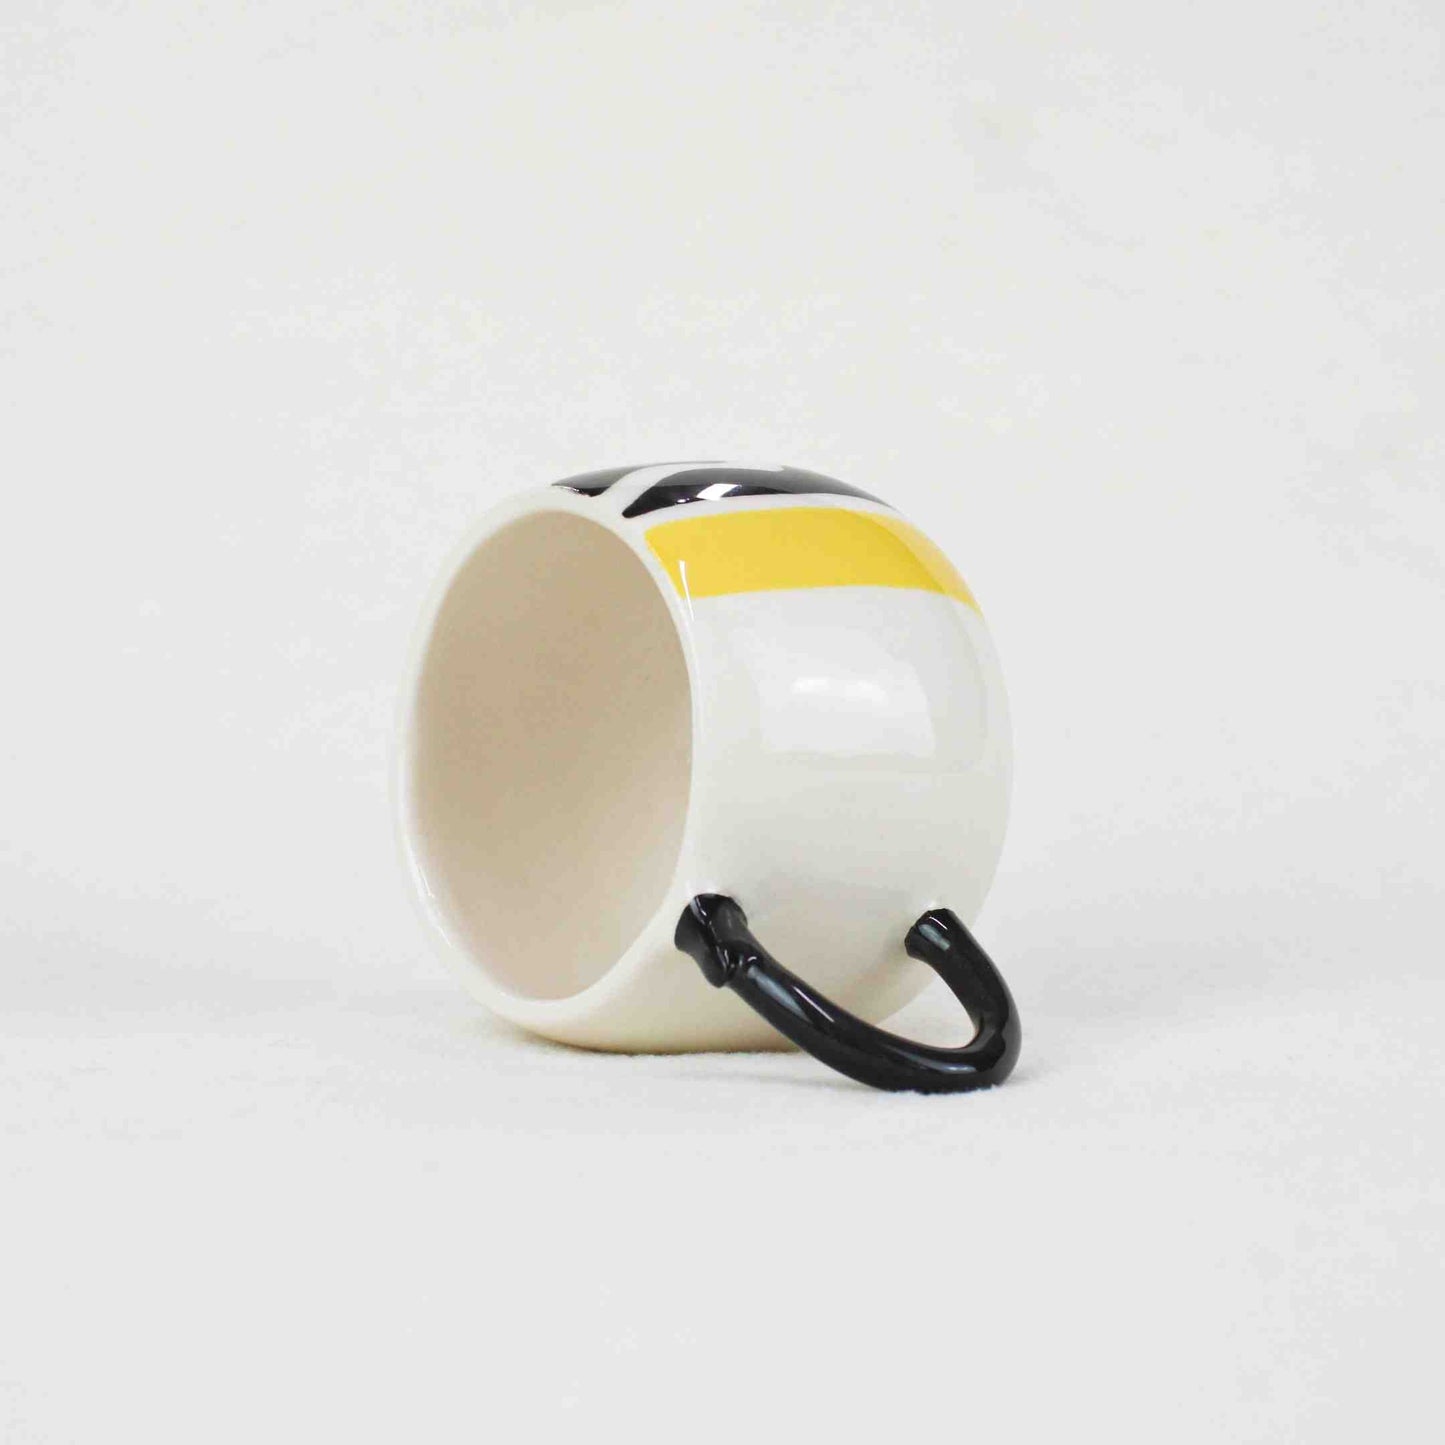 "Draw" Small Ceramic Cup, Design Ceramic Kitchenware